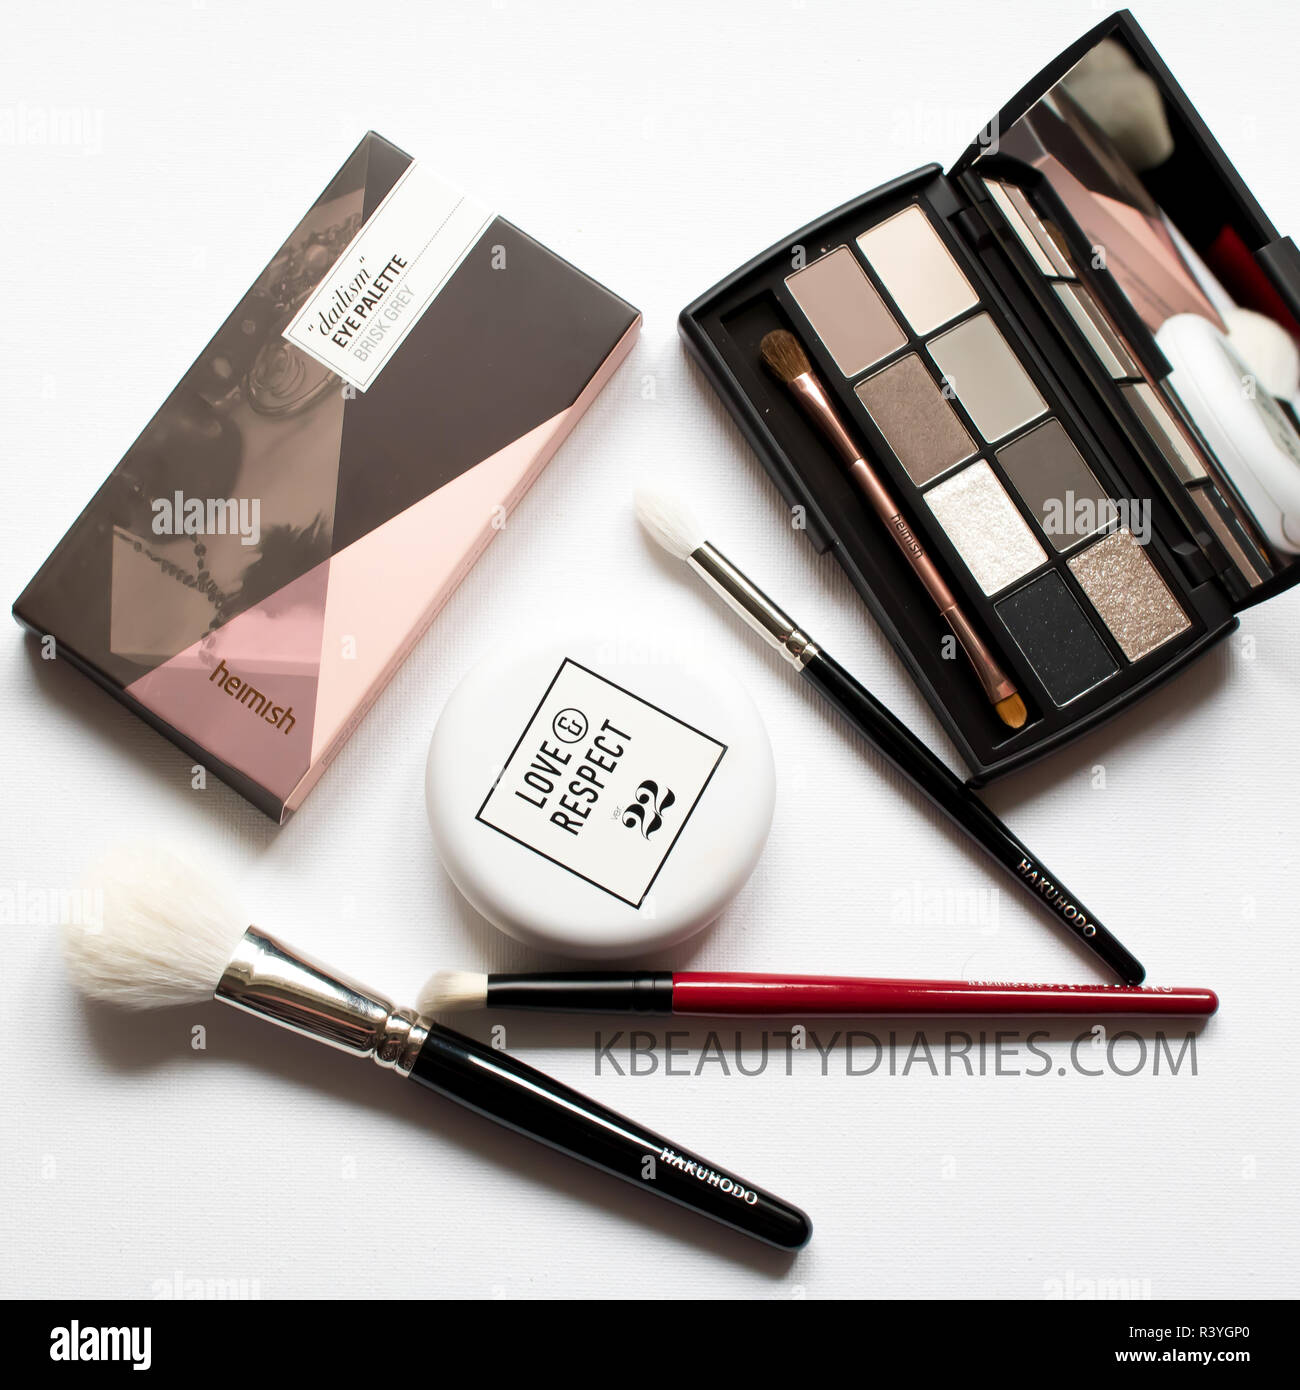 Flatlay of Make-up brushes with grey eyeshadow palette, make up brushes and cushion foundation on white background Stock Photo